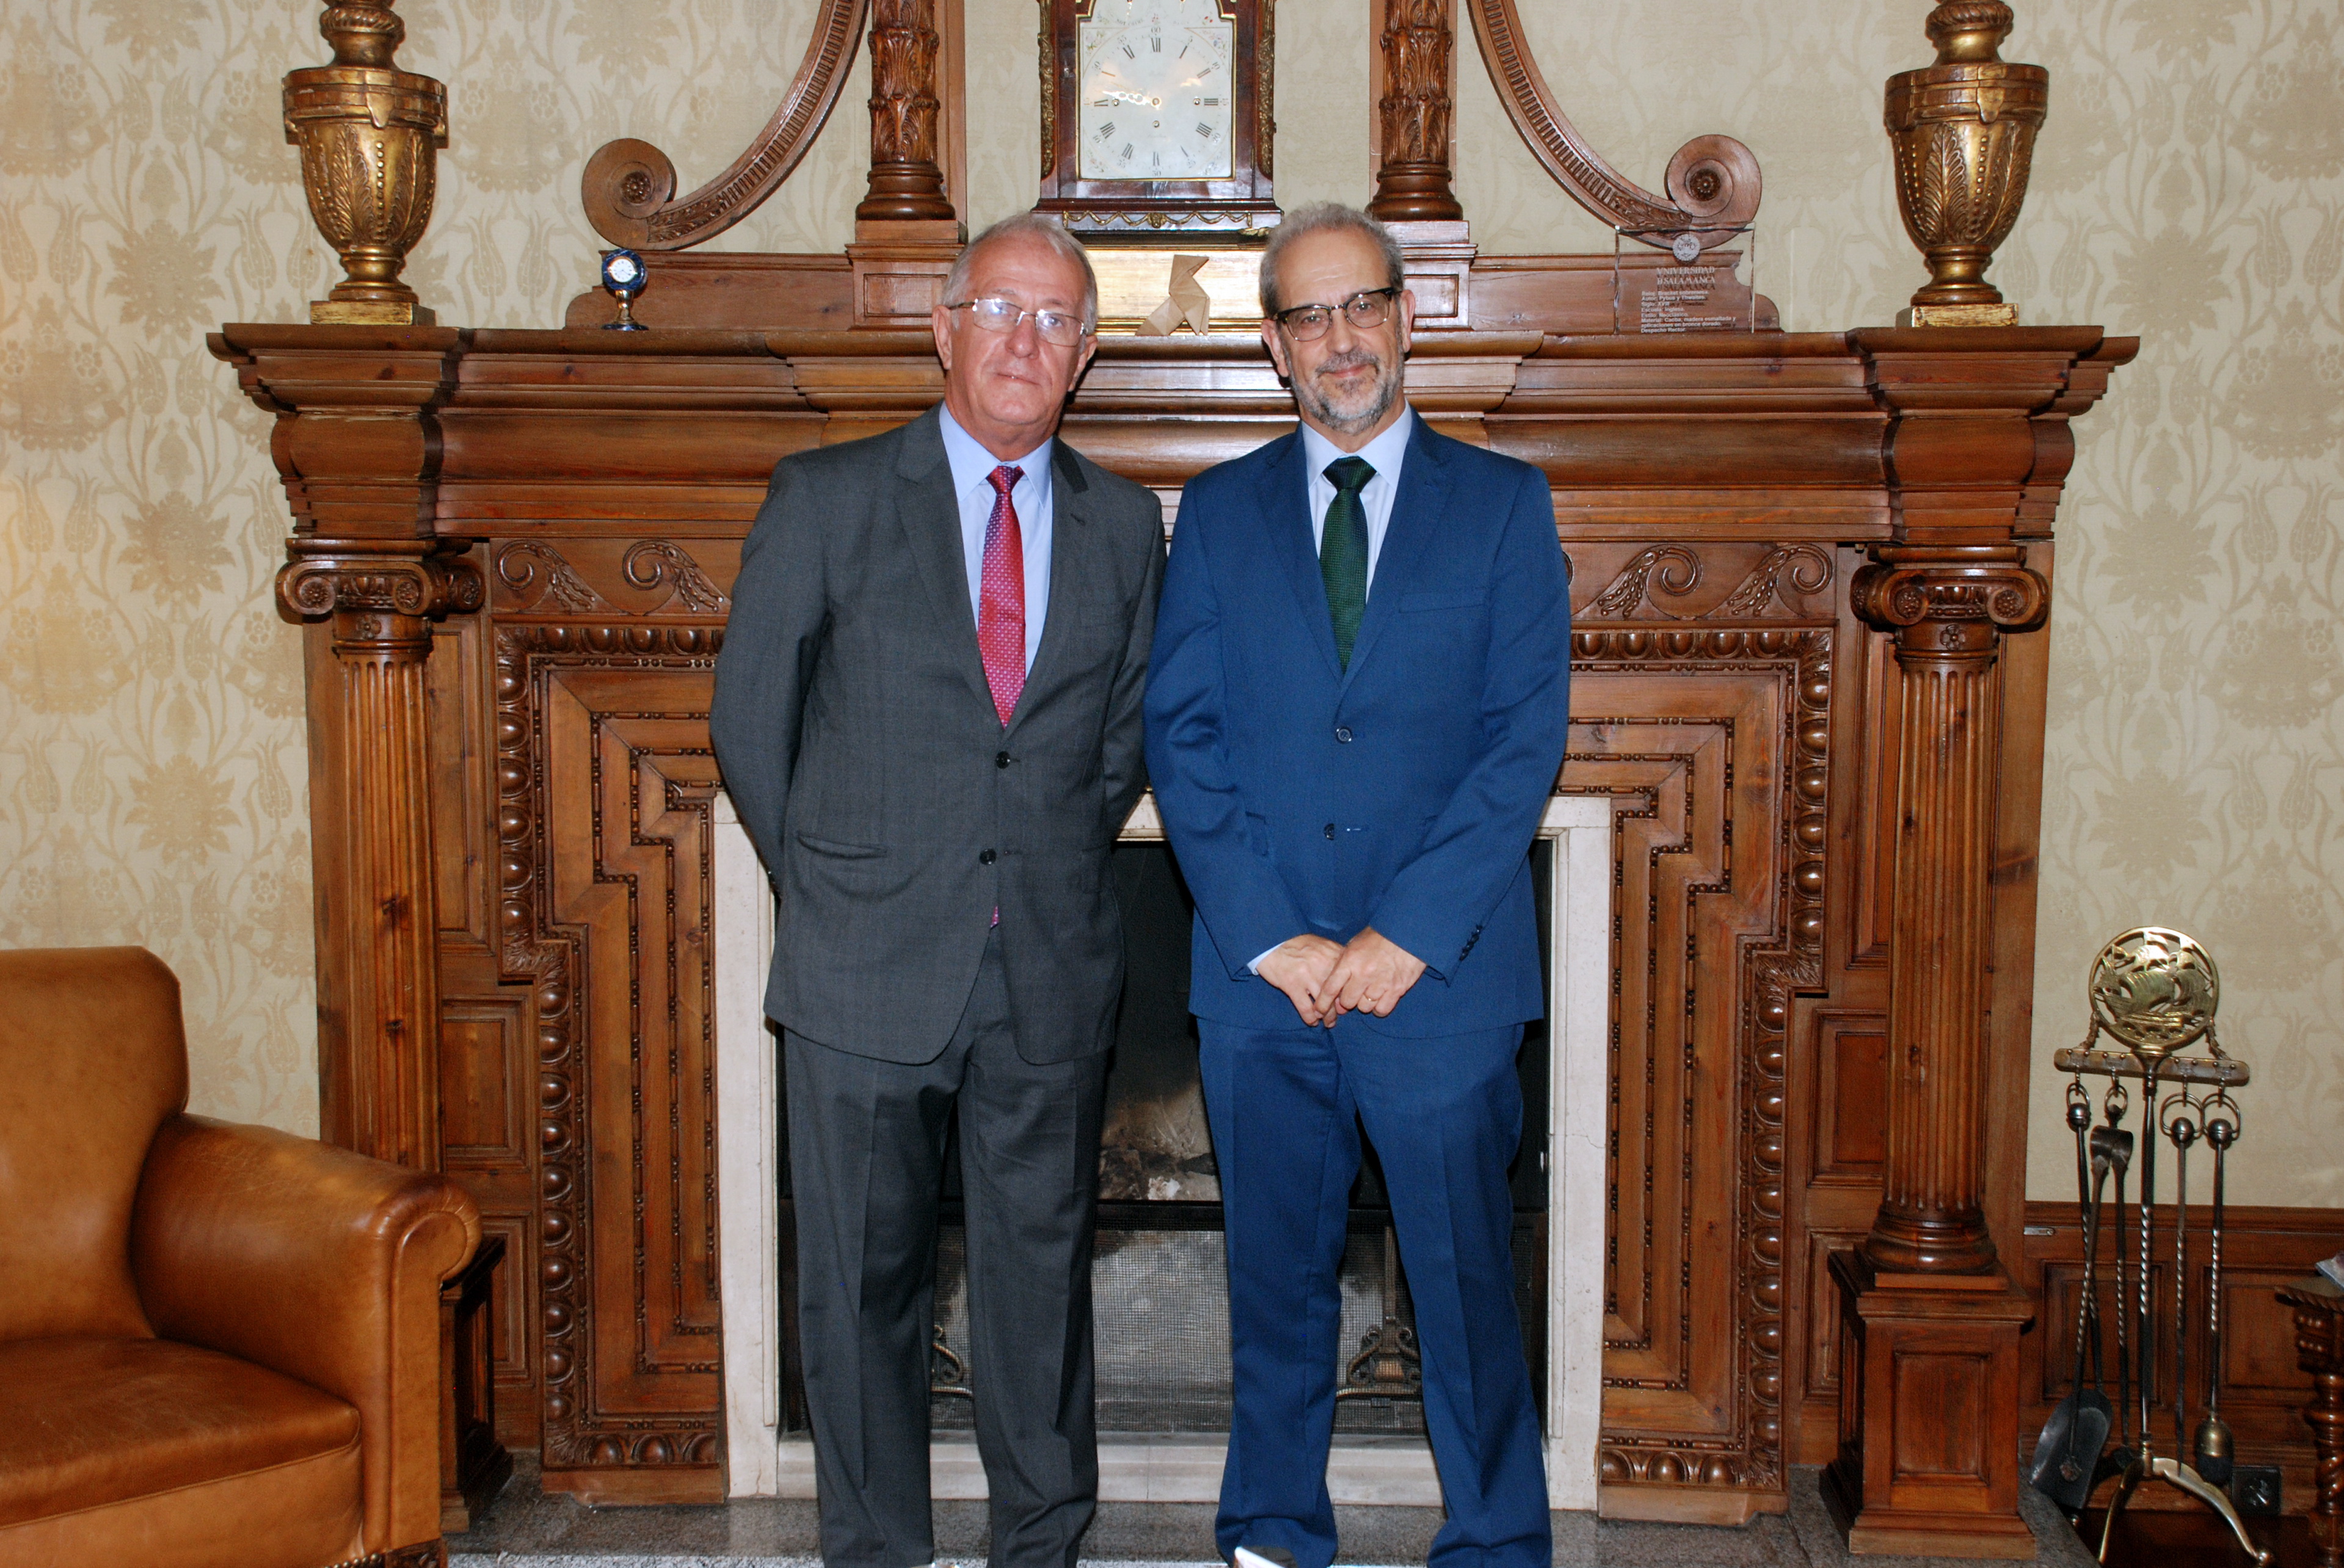 El rector de la Universidad de Salamanca, Daniel Hernández Ruipérez, recibe al rector de la Universidad de Unigranrio